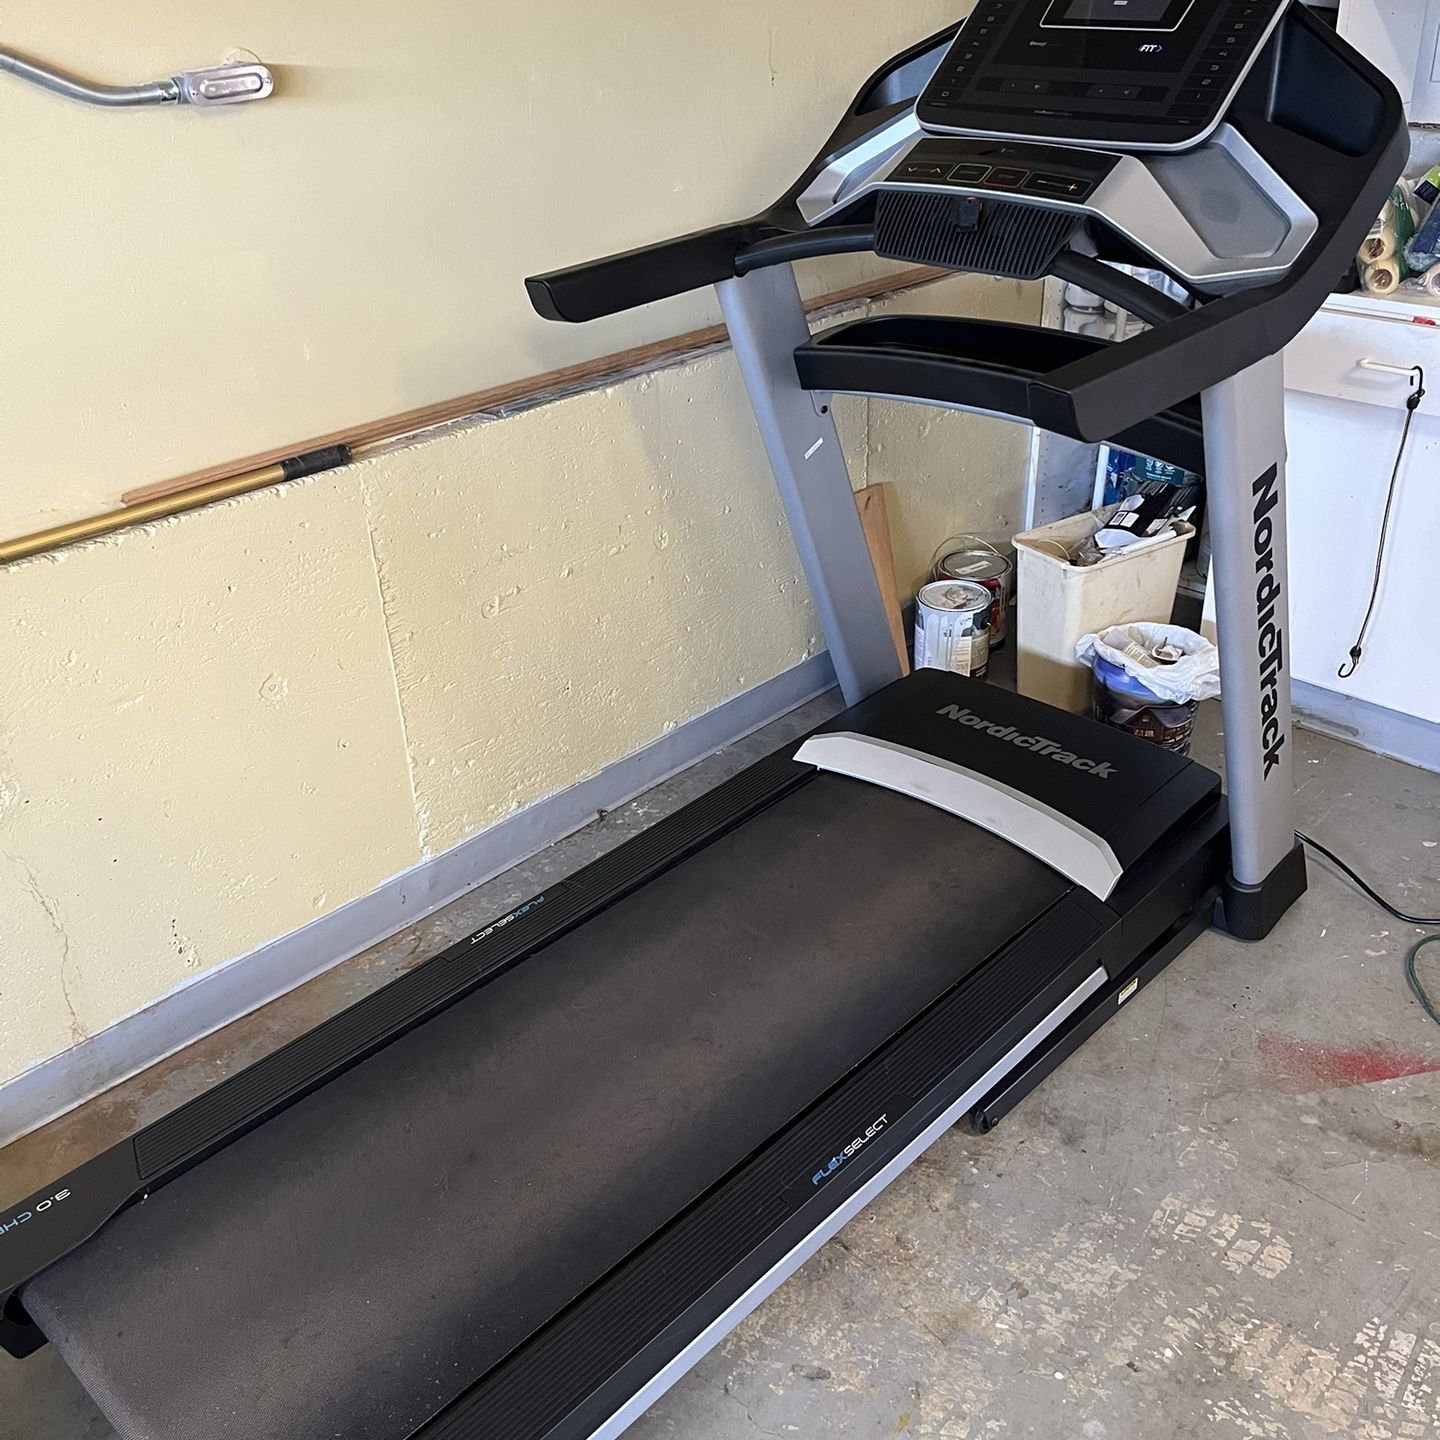 NordicTrack EXP7i Treadmill